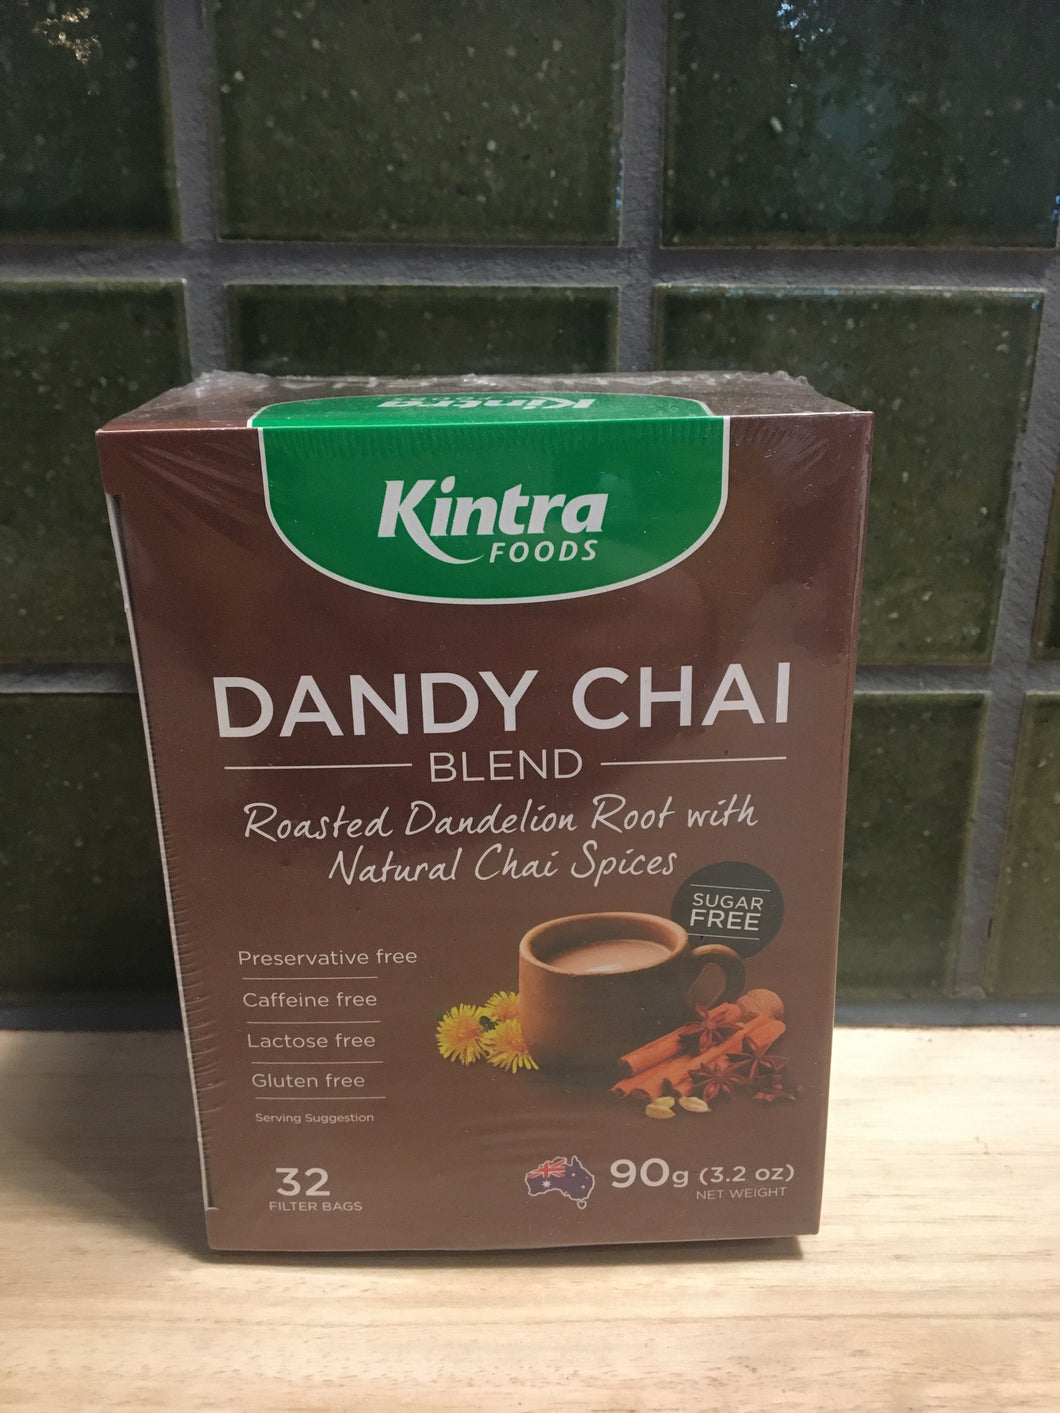 Kintra Foods Dandy Chai Blend 32 pk 90g